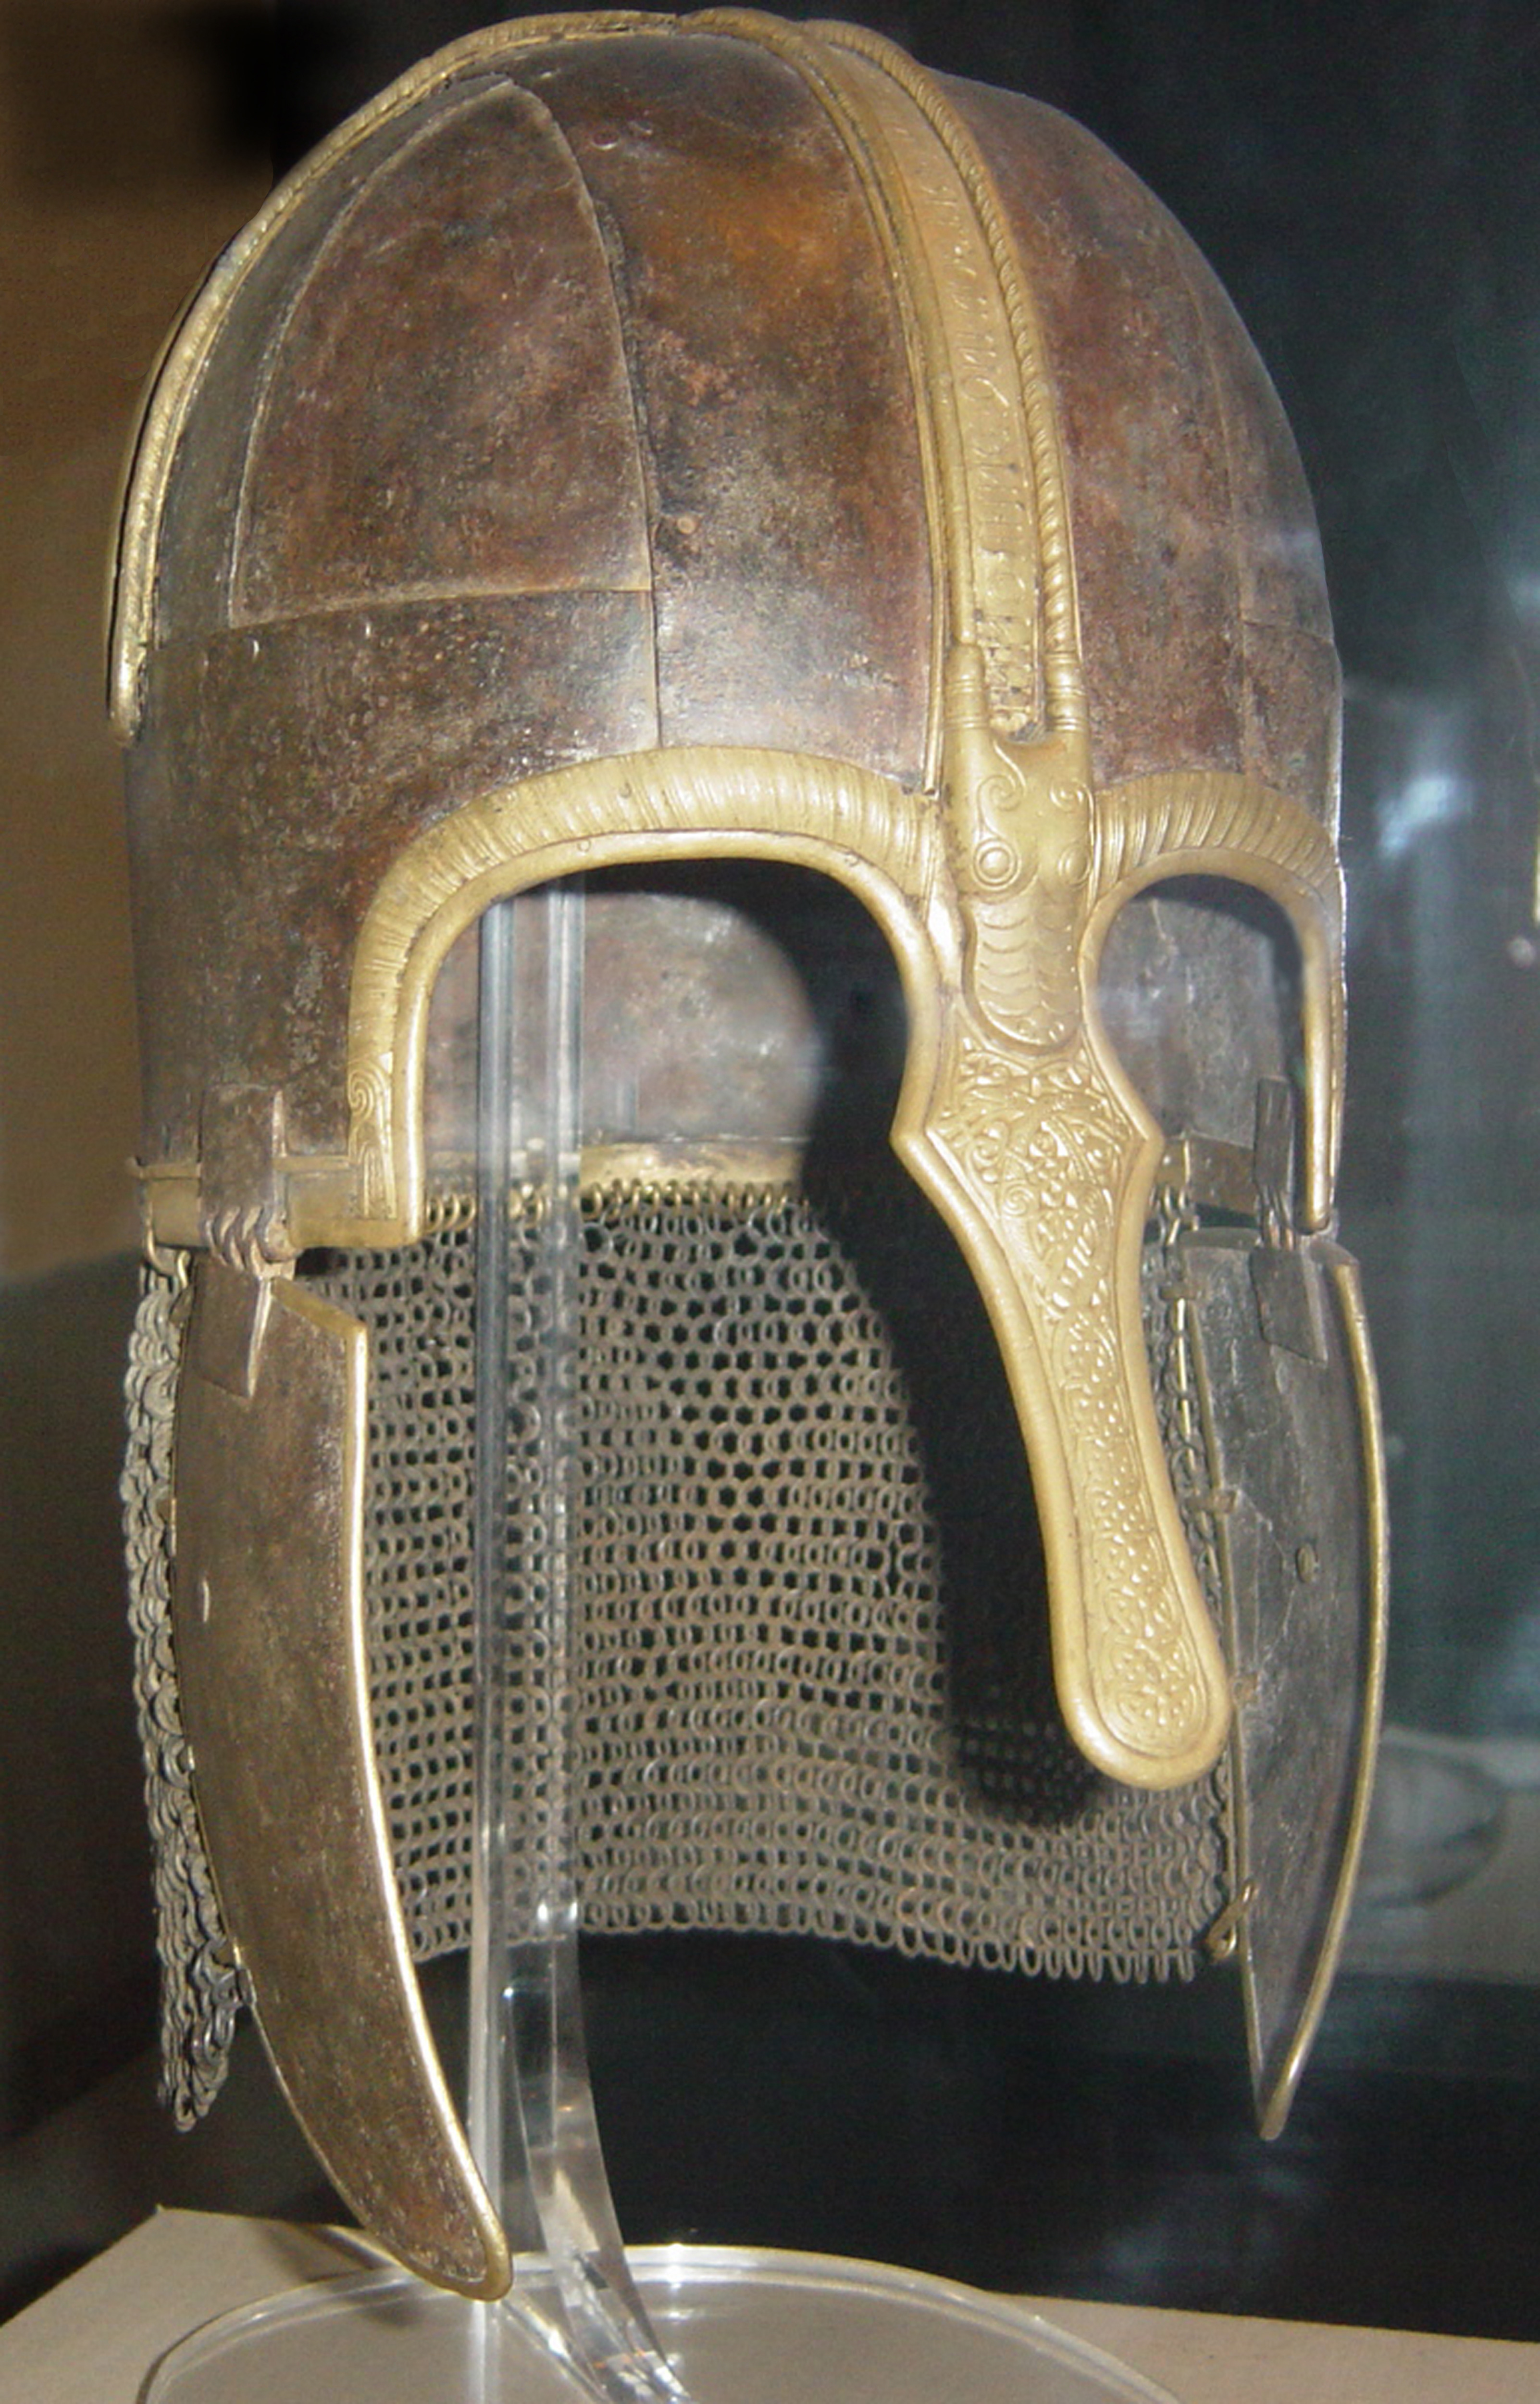 Osheres hjälm är från senare hälften av 700-talet och kan beskådas på Yorkshire Castle Museum.